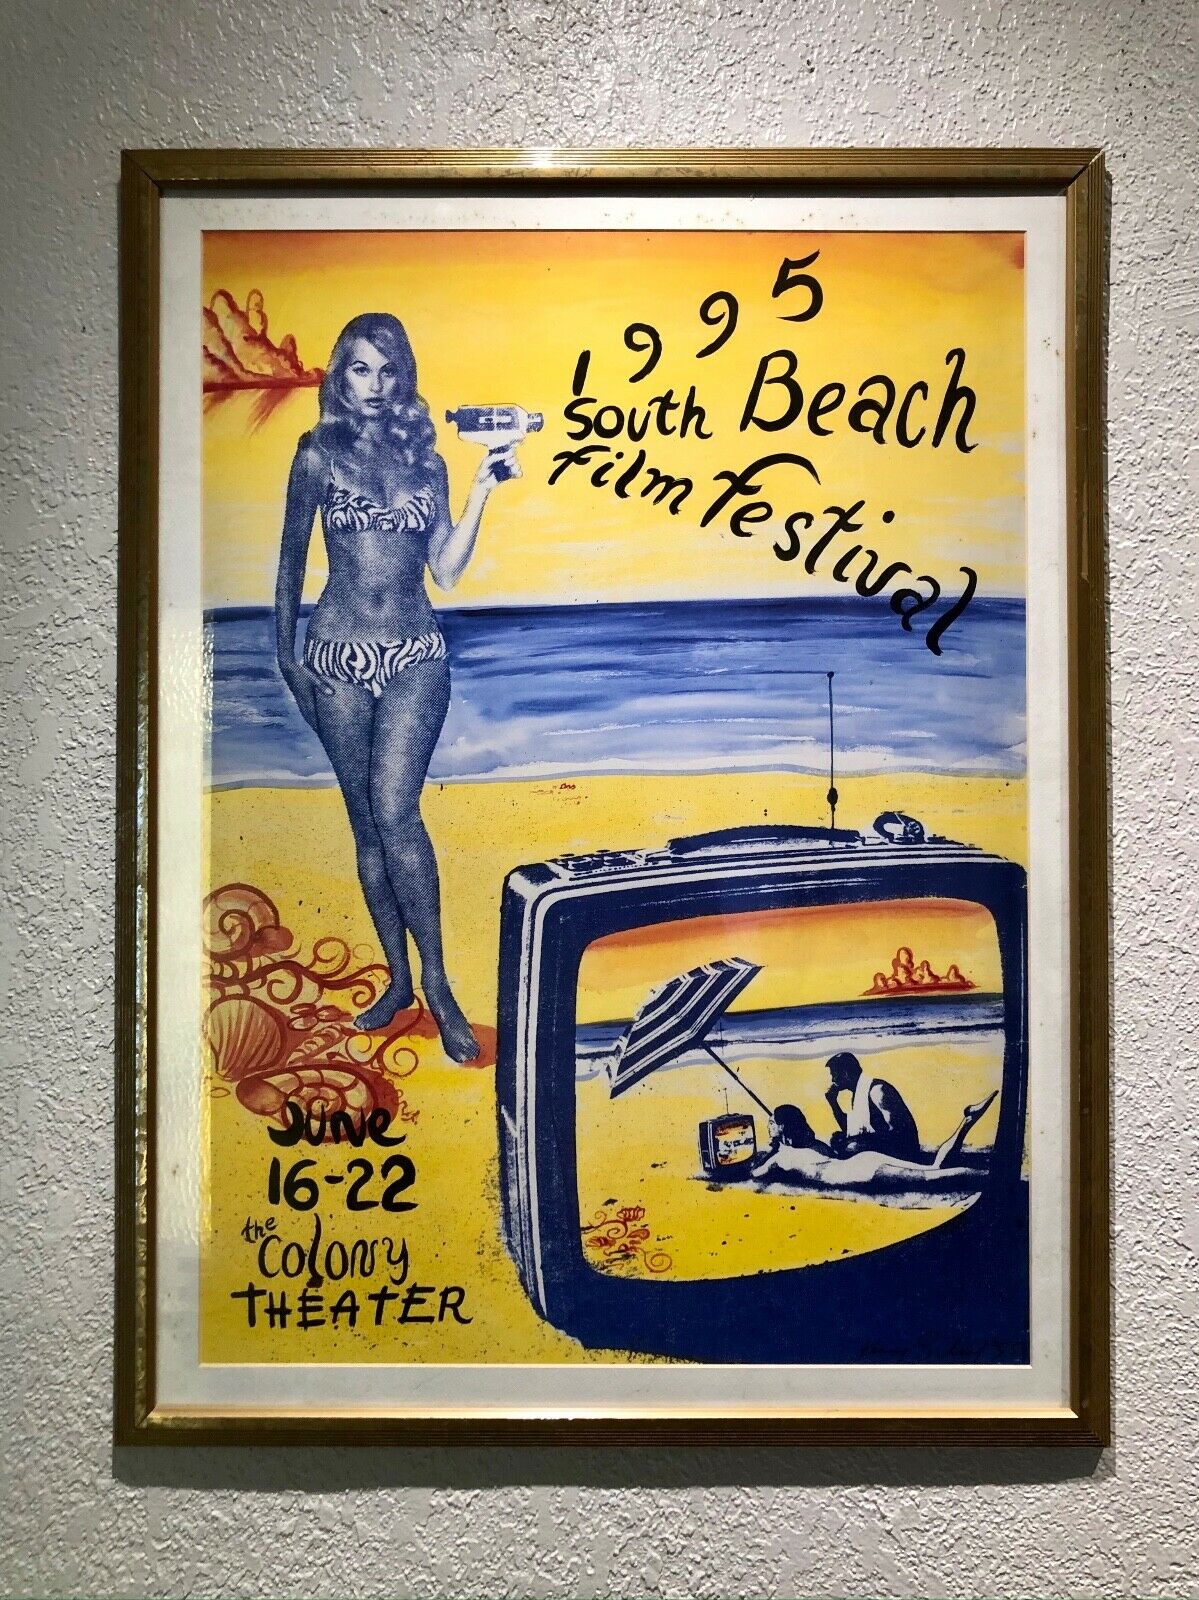 Miami Beach Film Festival Poster